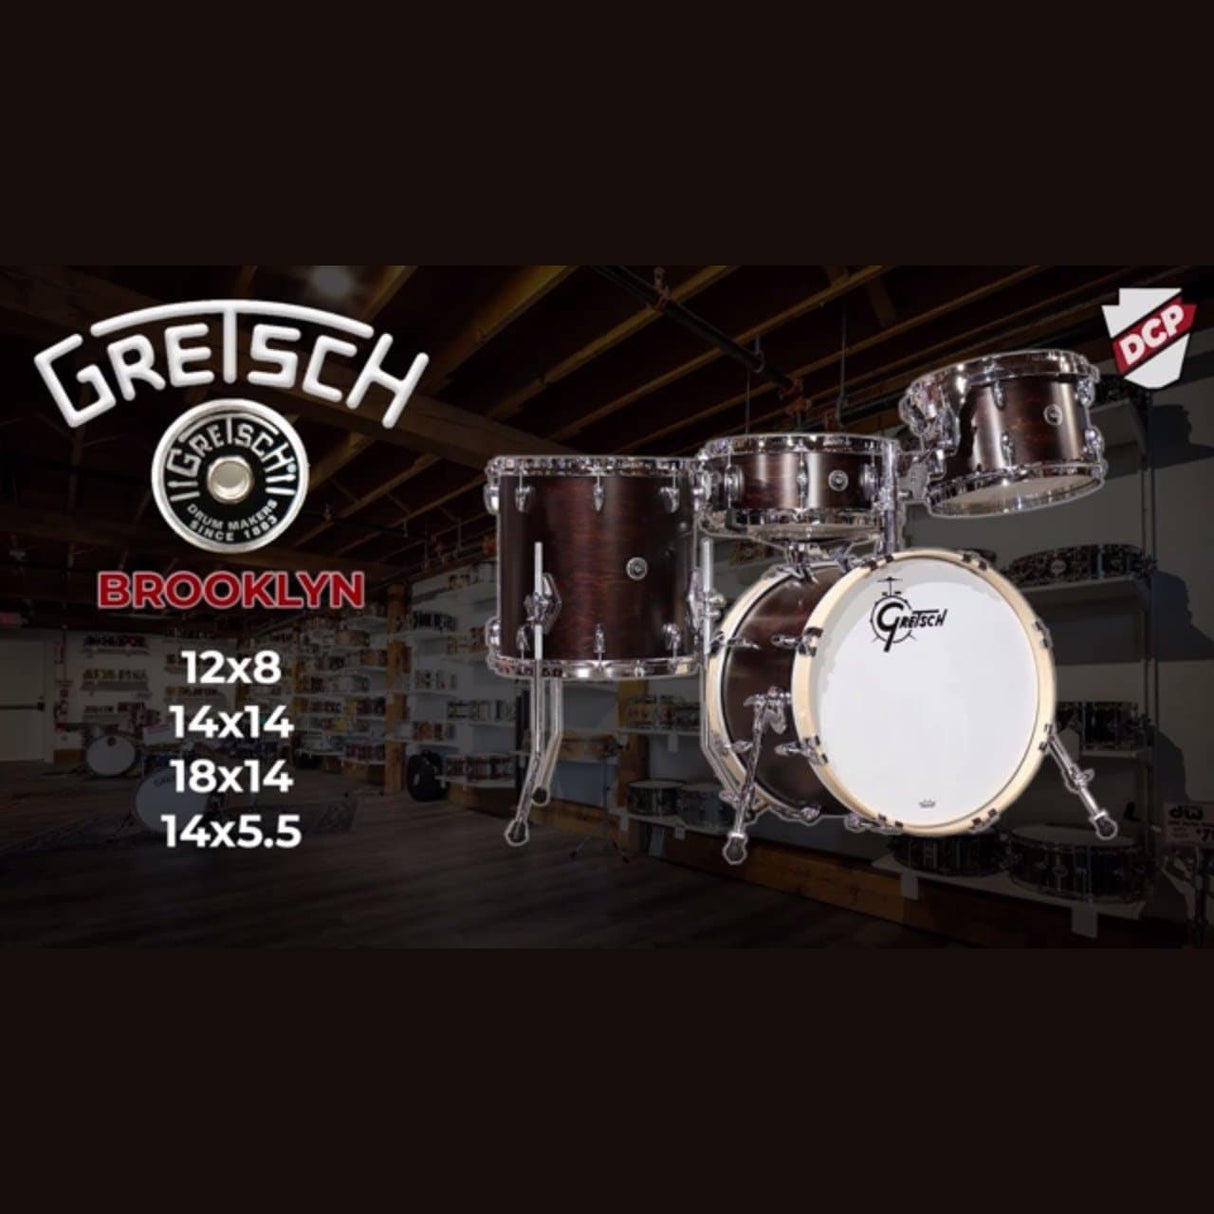 Gretsch Brooklyn 4pc Drum Set 18/12/14/14 Satin Antique Maple w/Mount